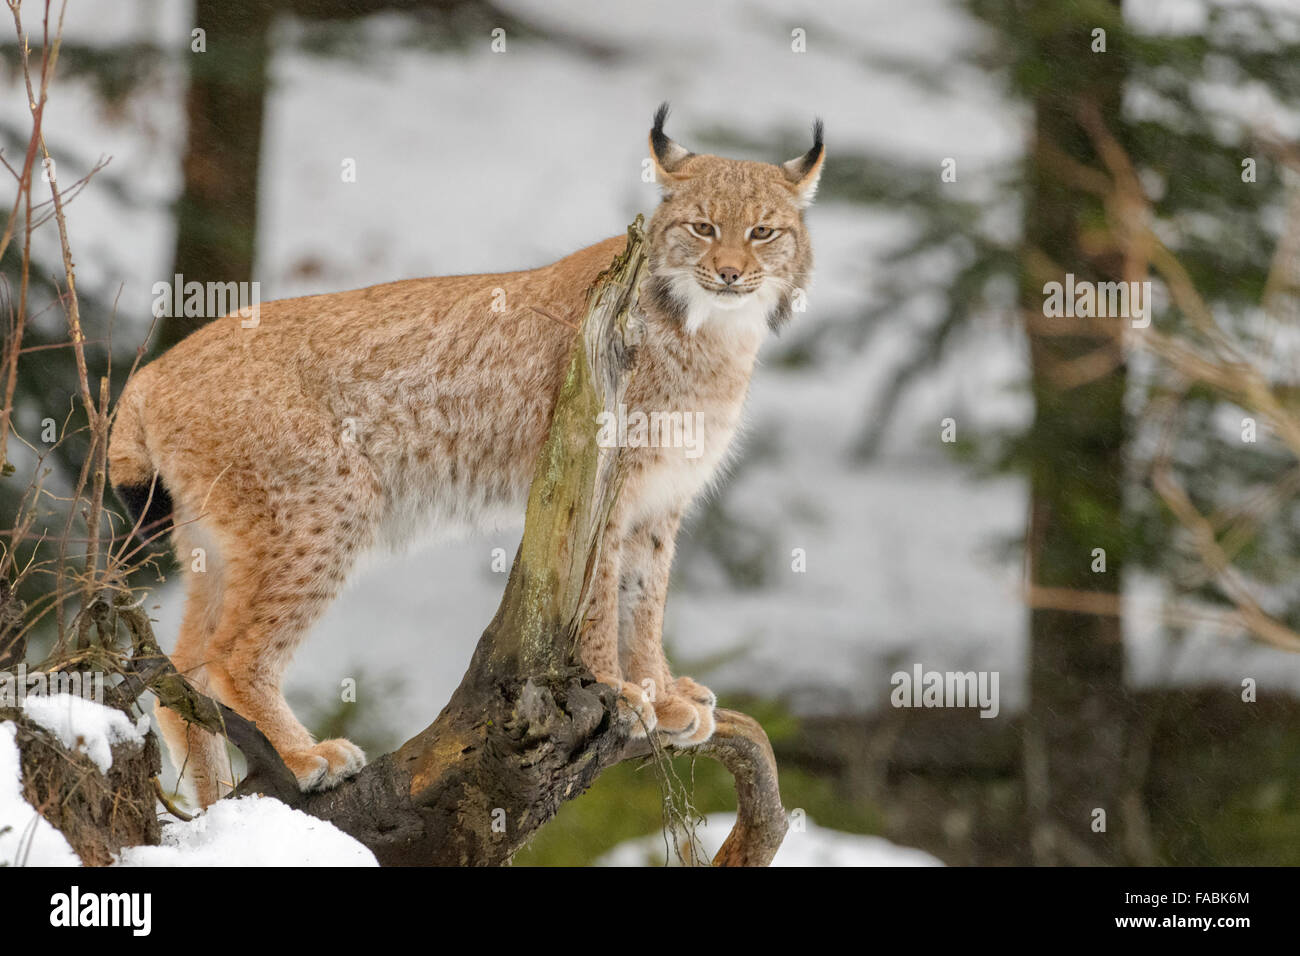 El lince eurásico (Lynx lynx) en un registro permanente de la madera en la nieve, mirando a la cámara, Bosque de Baviera, Alemania. Foto de stock